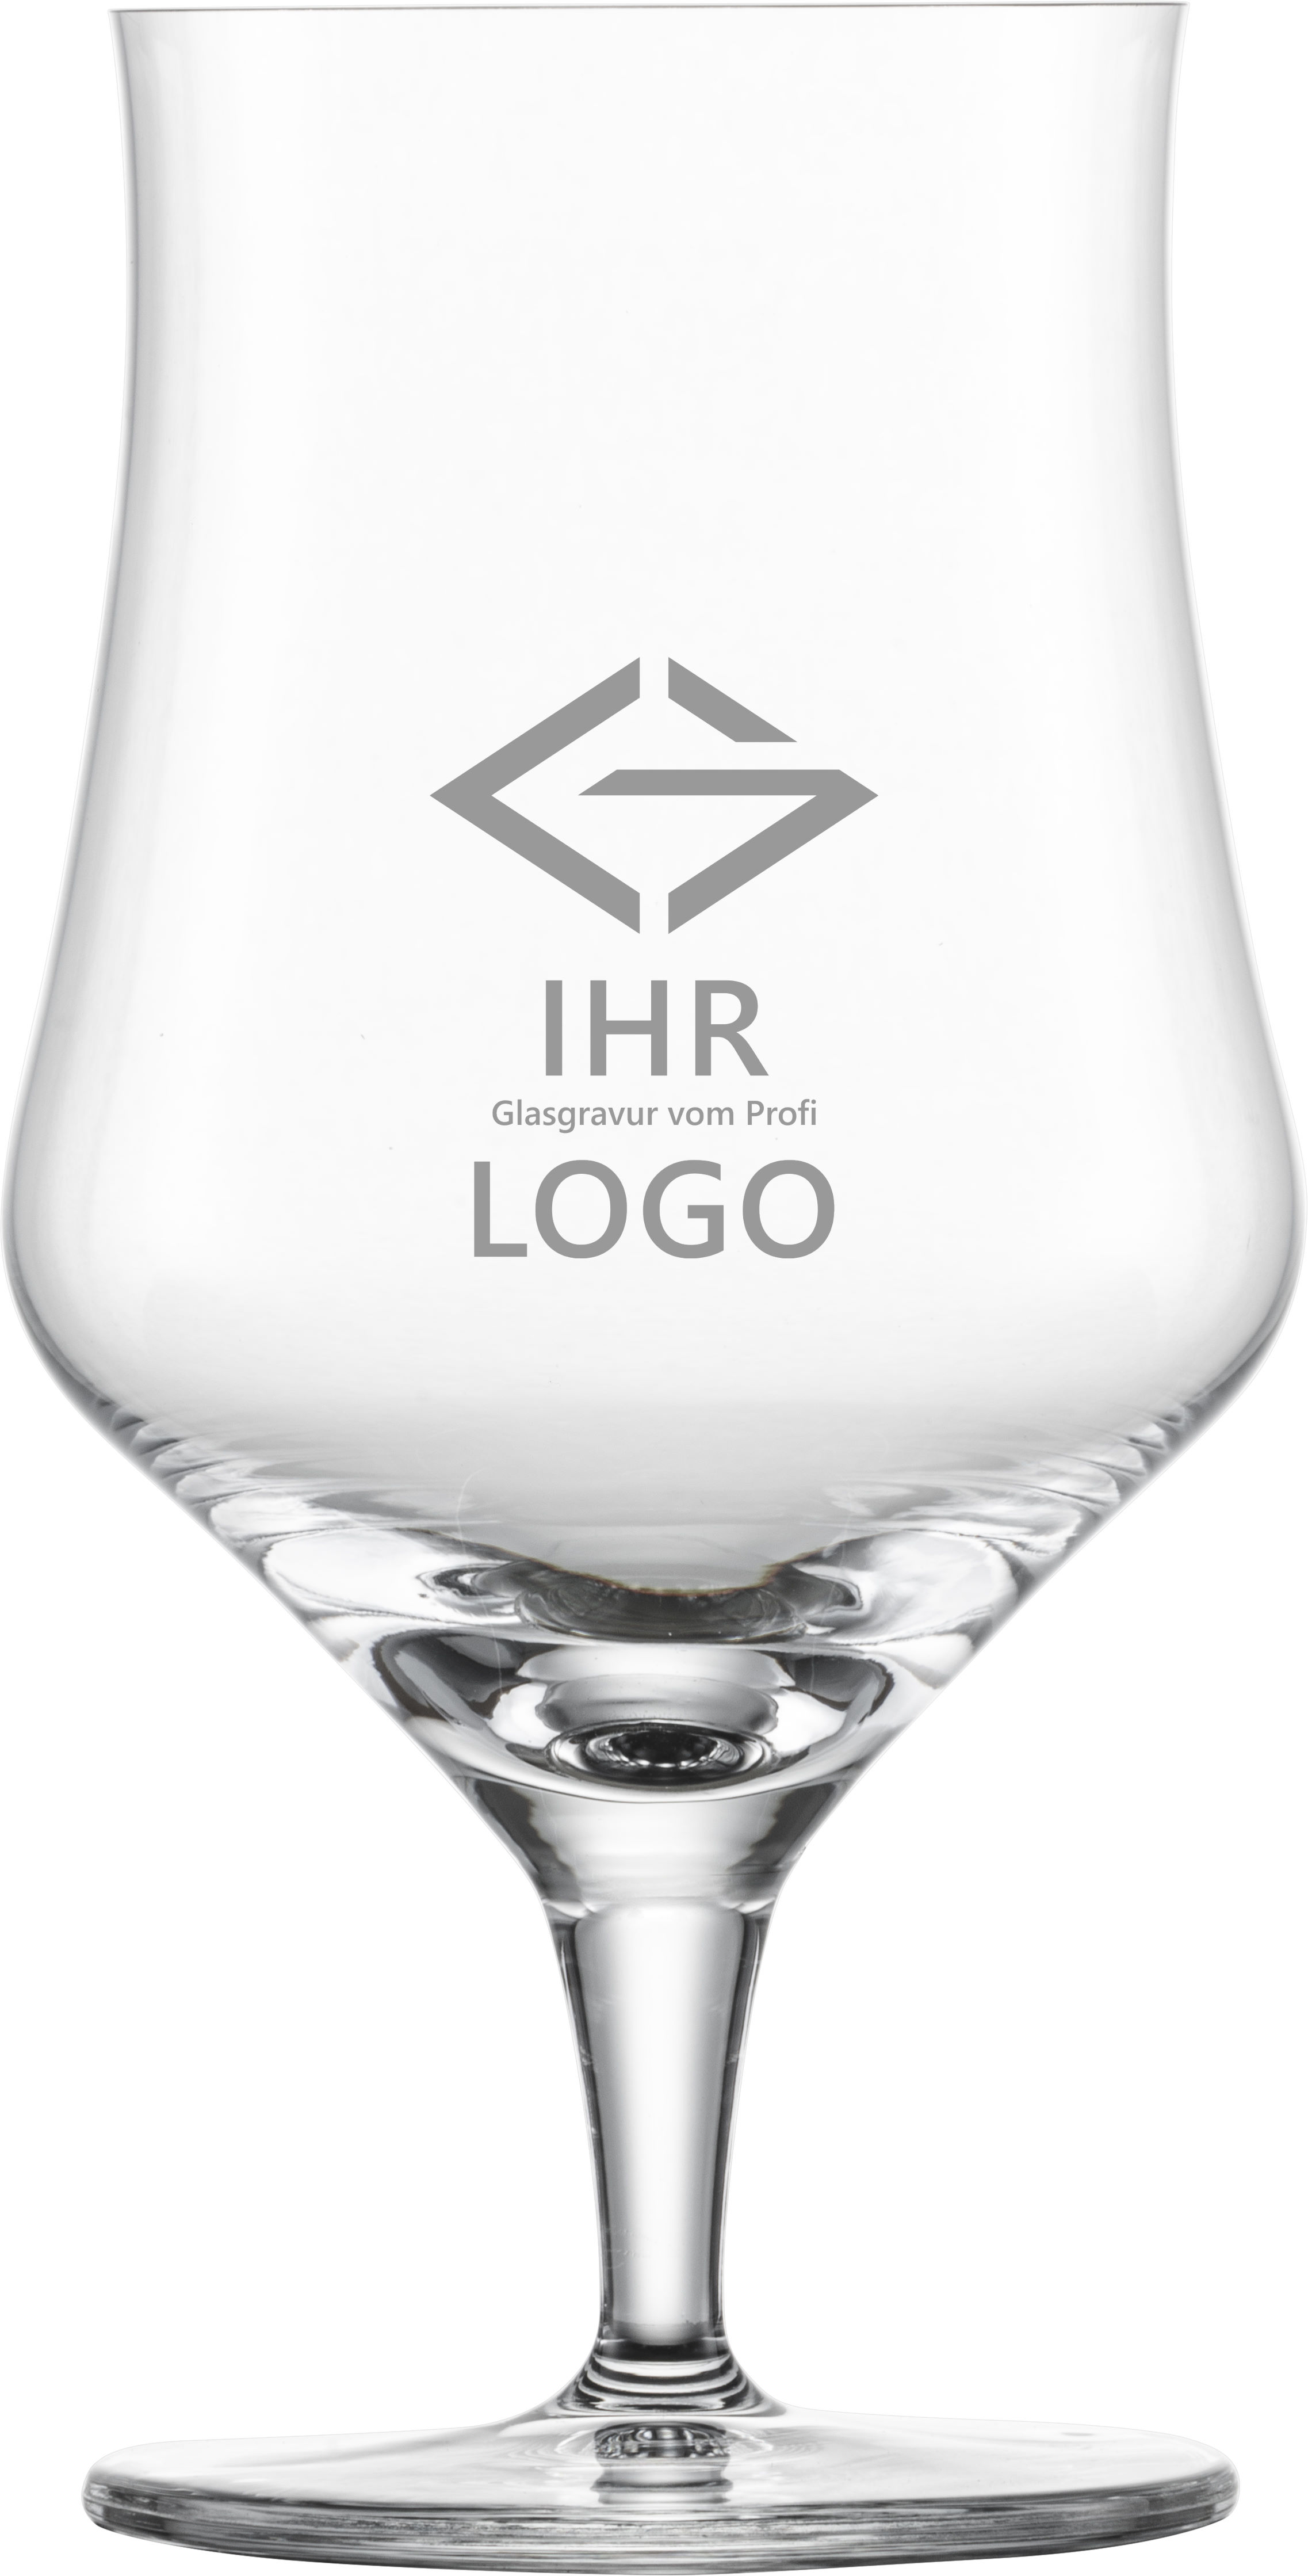 LOGO Craft Beer 0,3 Universal Glas Schott mit Logo Gravur